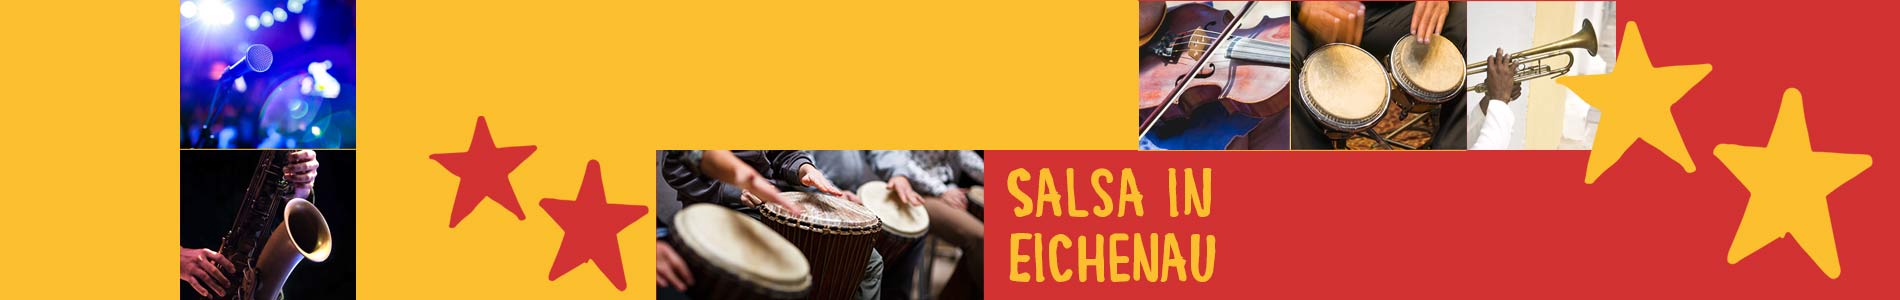 Salsa in Eichenau – Salsa lernen und tanzen, Tanzkurse, Partys, Veranstaltungen